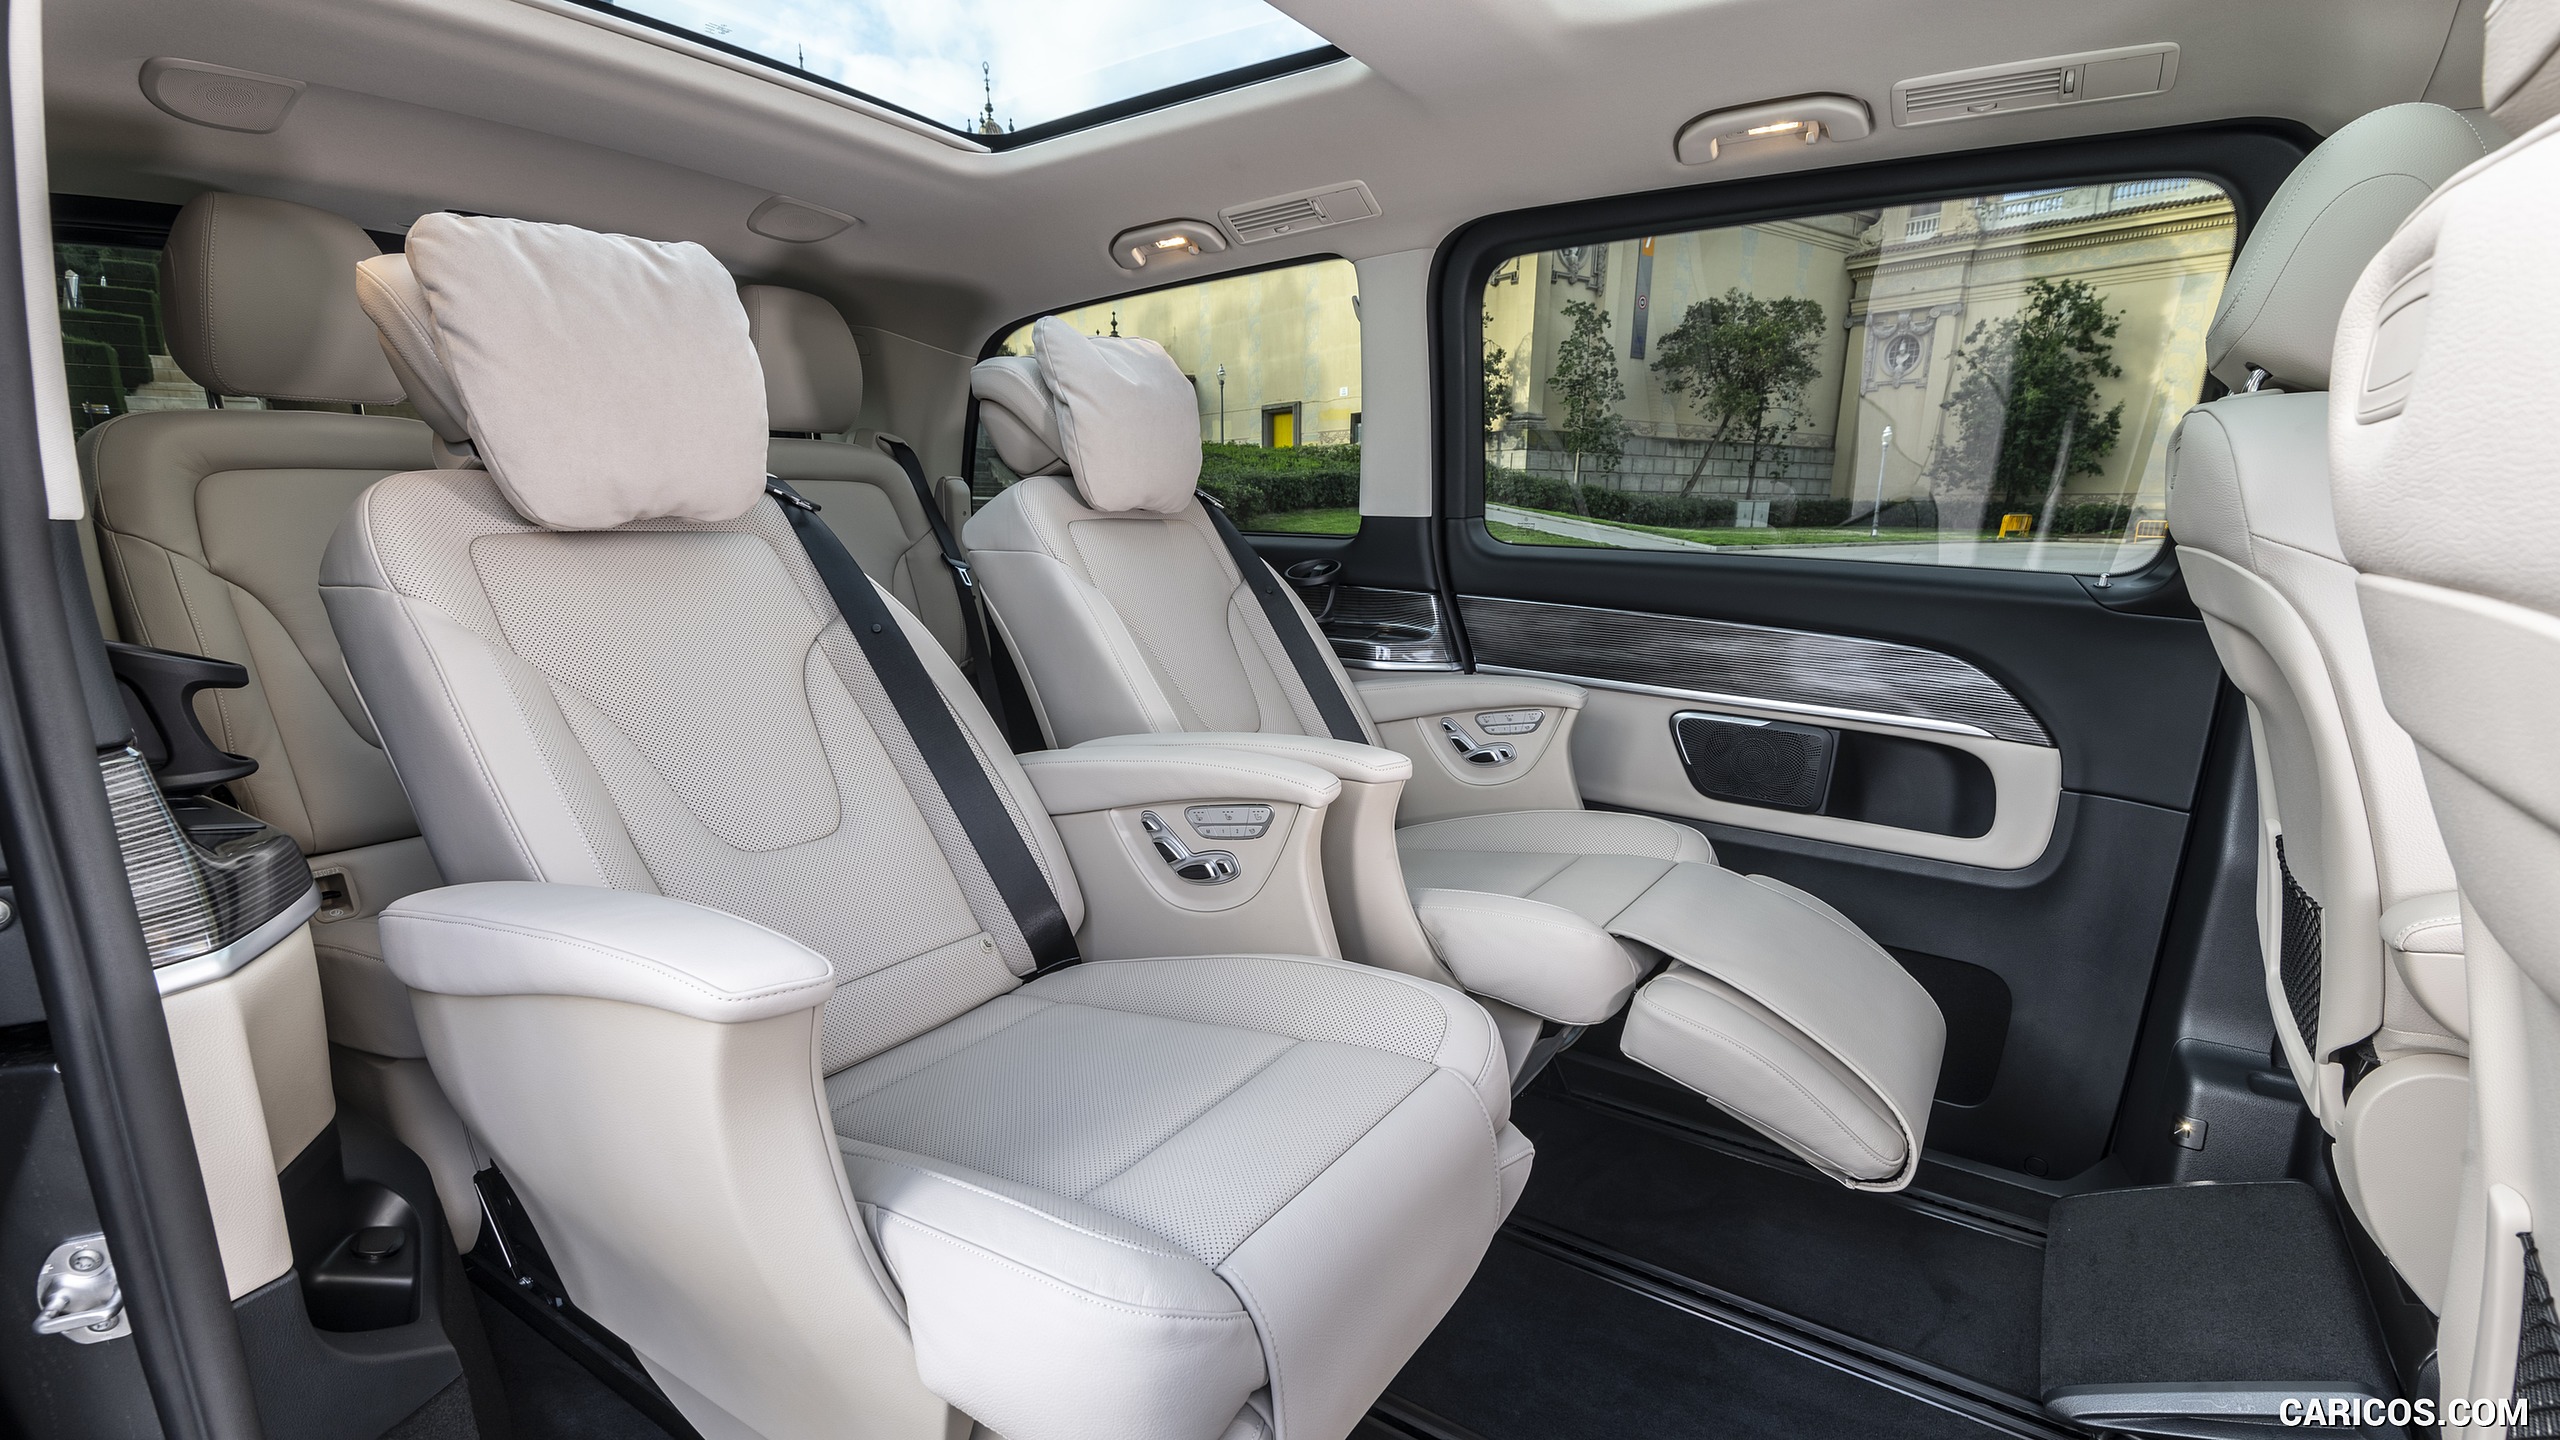 2019 Mercedes-Benz V-Class V300d AVANTGARDE - Interior, Rear Seats, #116 of 216